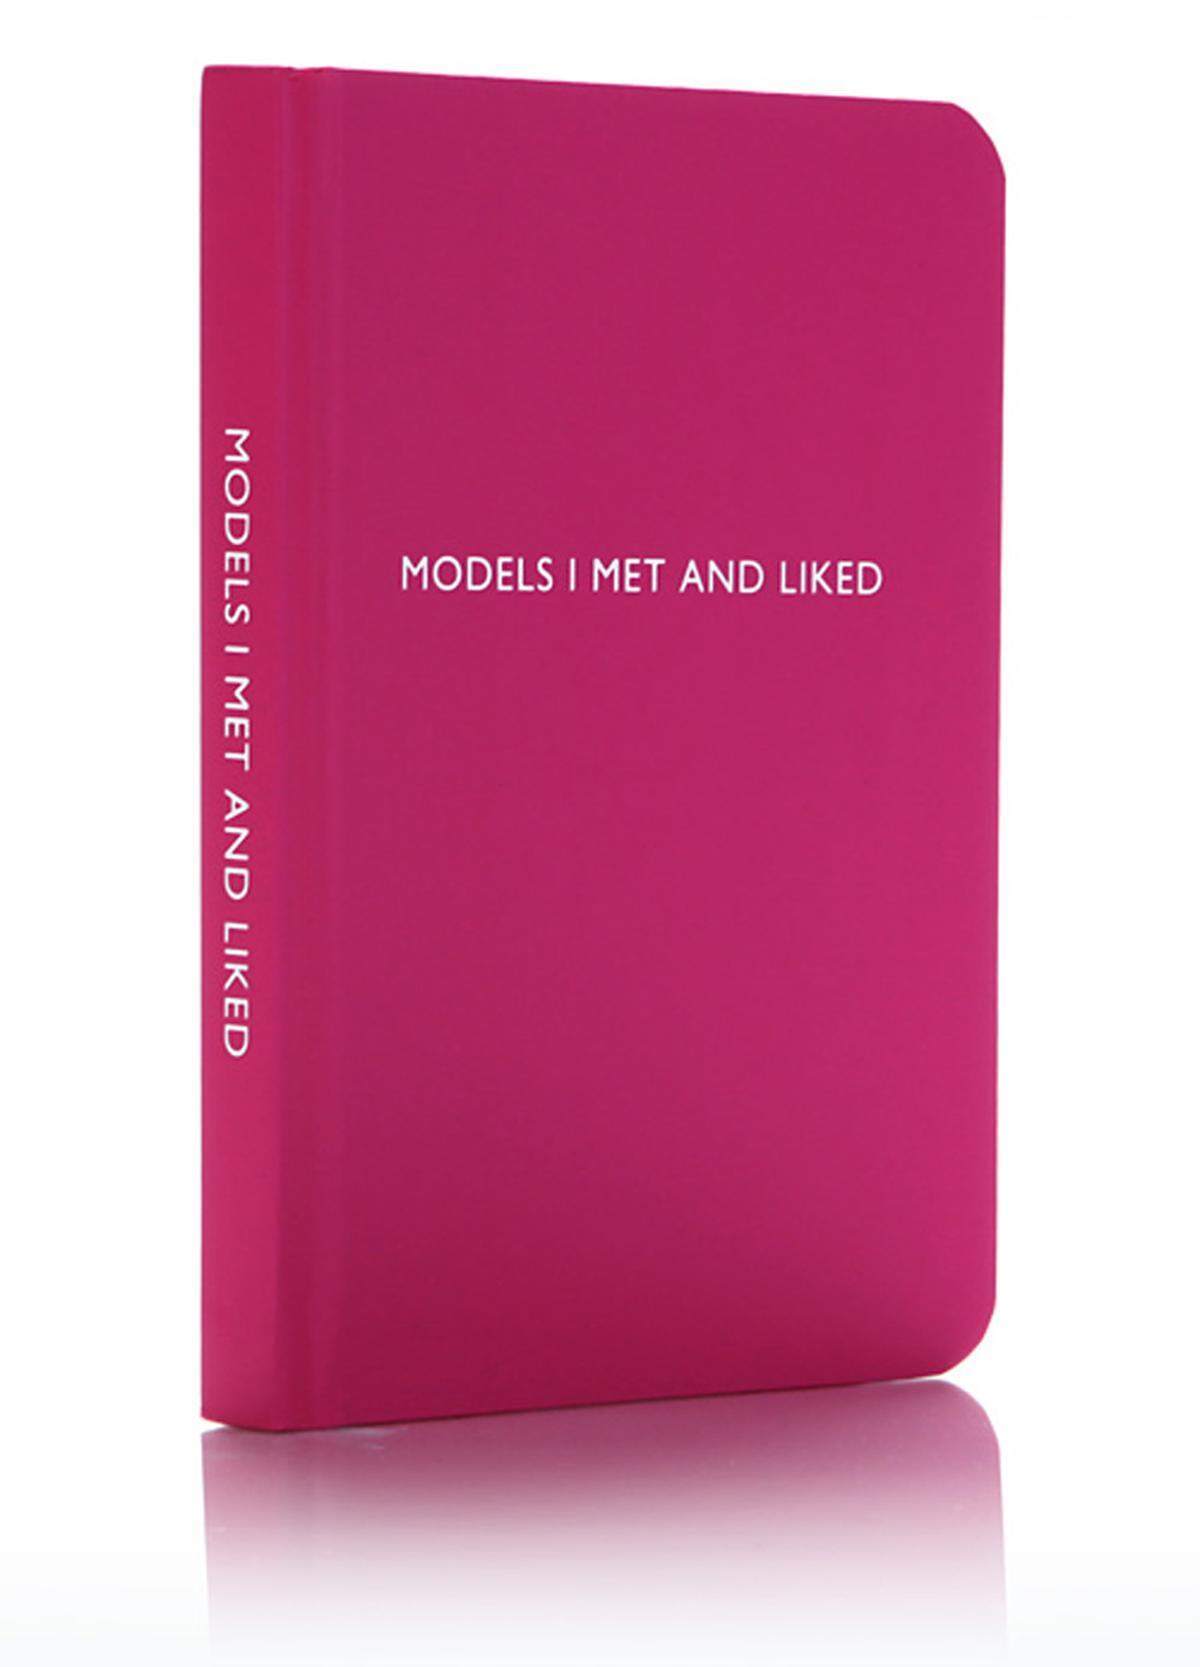 Für den Womanizer: "Models I met and liked" steht auf dem Notizbuch von Archie Grand, 9,95 Euro, im gut sortierten Fachhandel erhältlich.